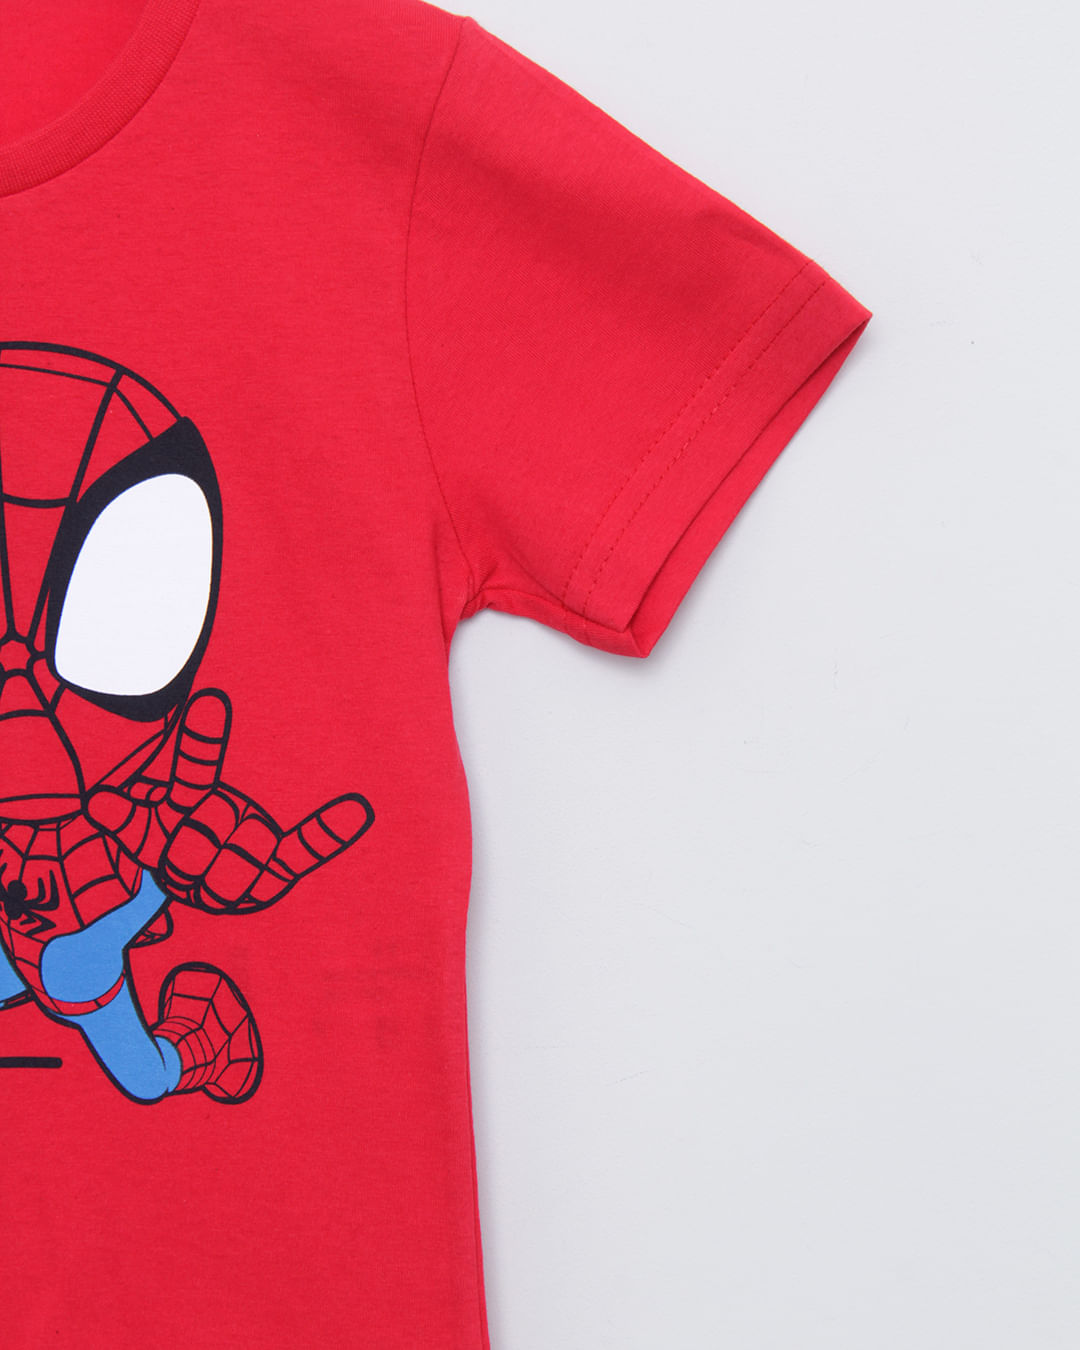 Camiseta Bebê Homem Aranha Manga Curta Marvel Vermelha